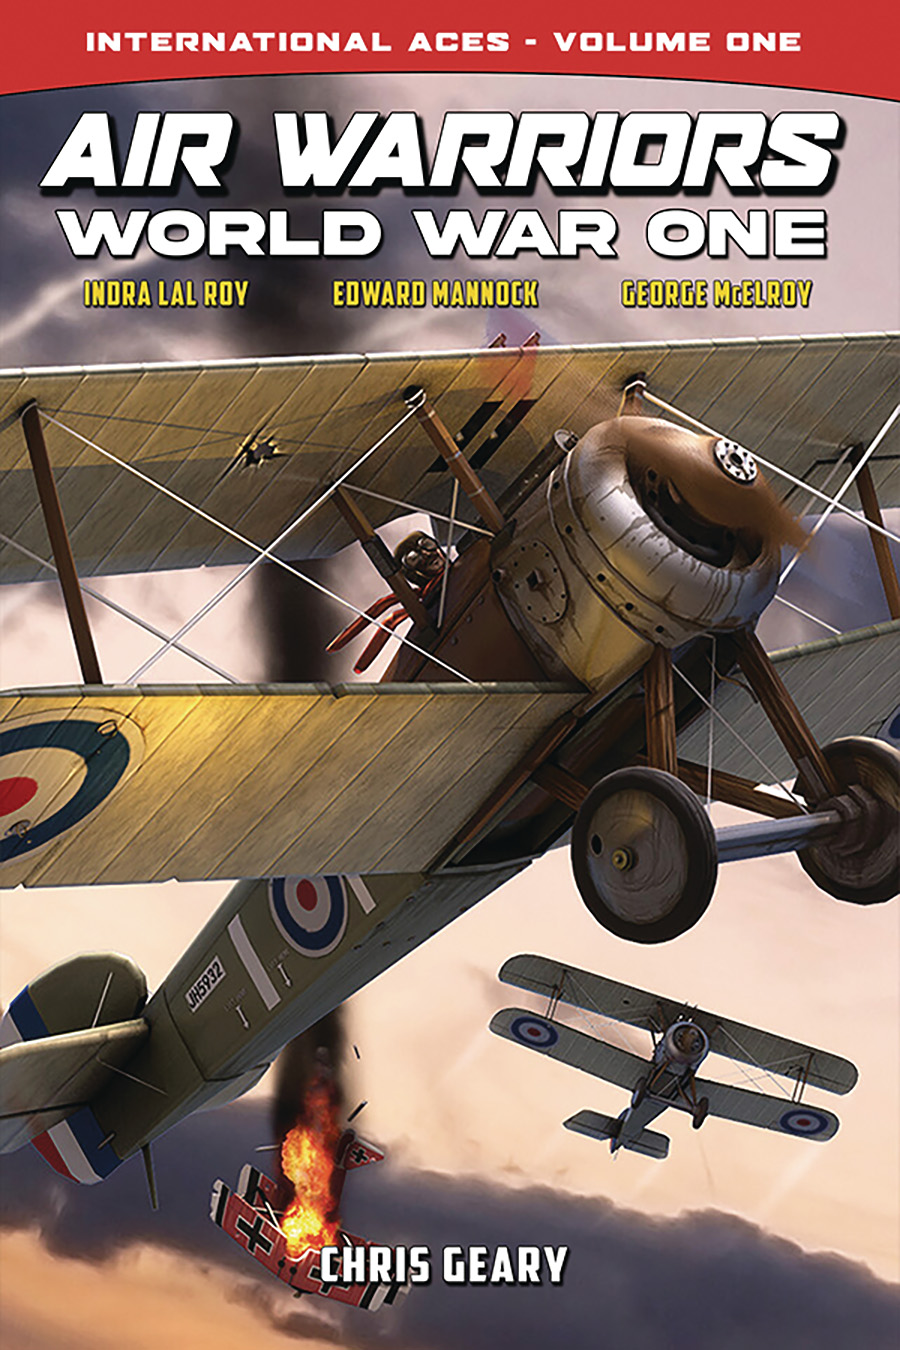 Air Warriors World War One International Aces Vol 1 TP